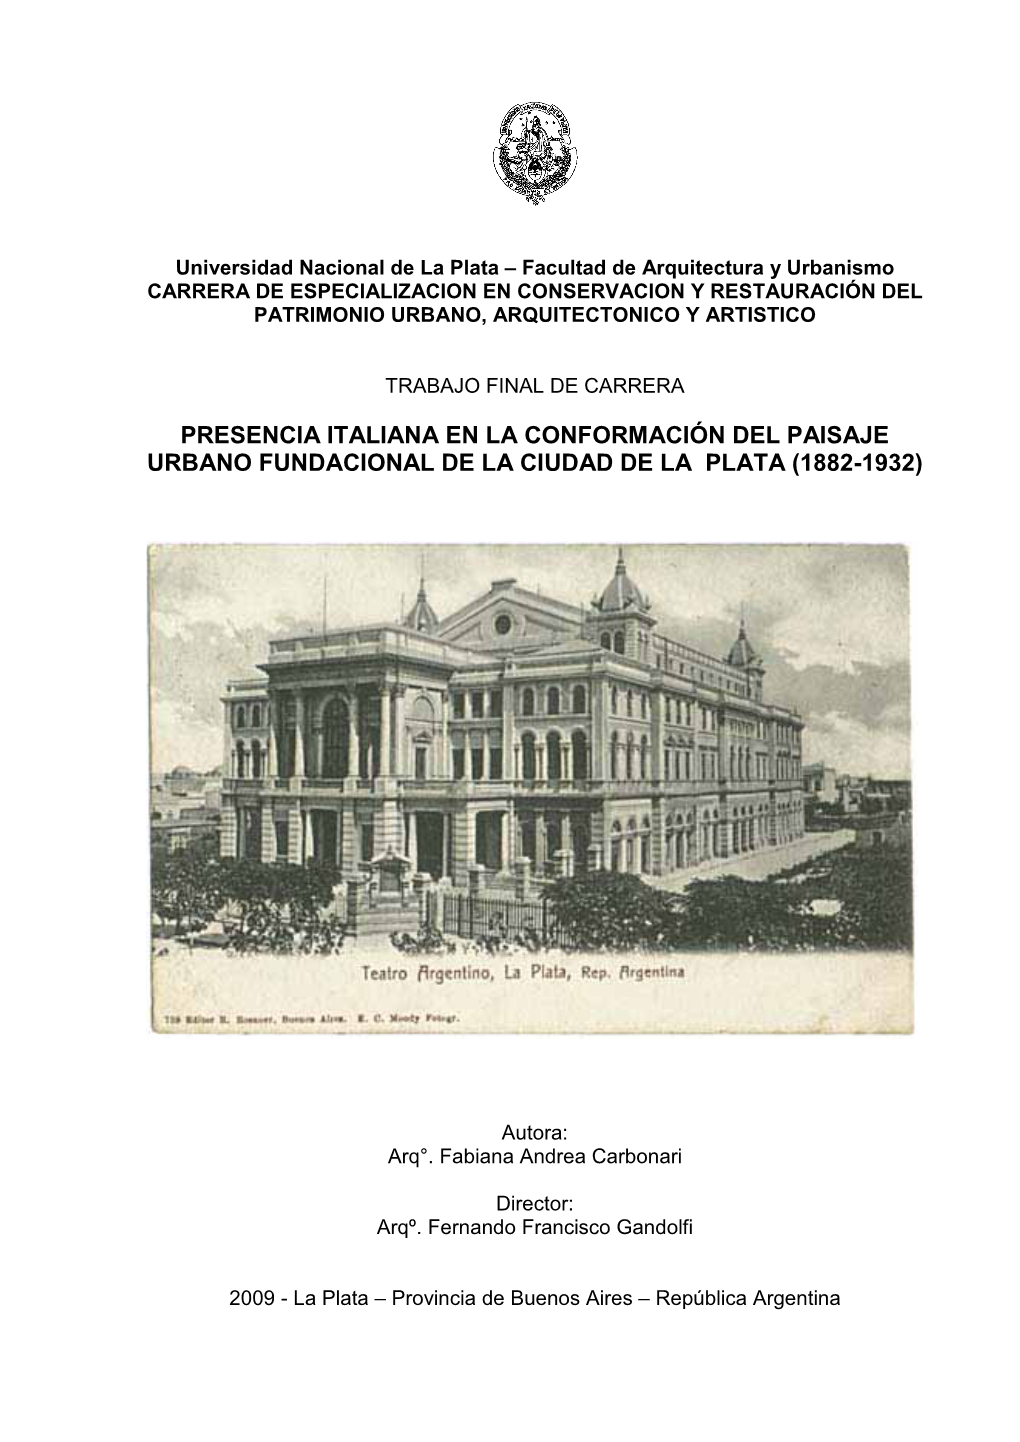 Presencia Italiana En La Conformación Del Paisaje Urbano Fundacional De La Ciudad De La Plata (1882-1932)